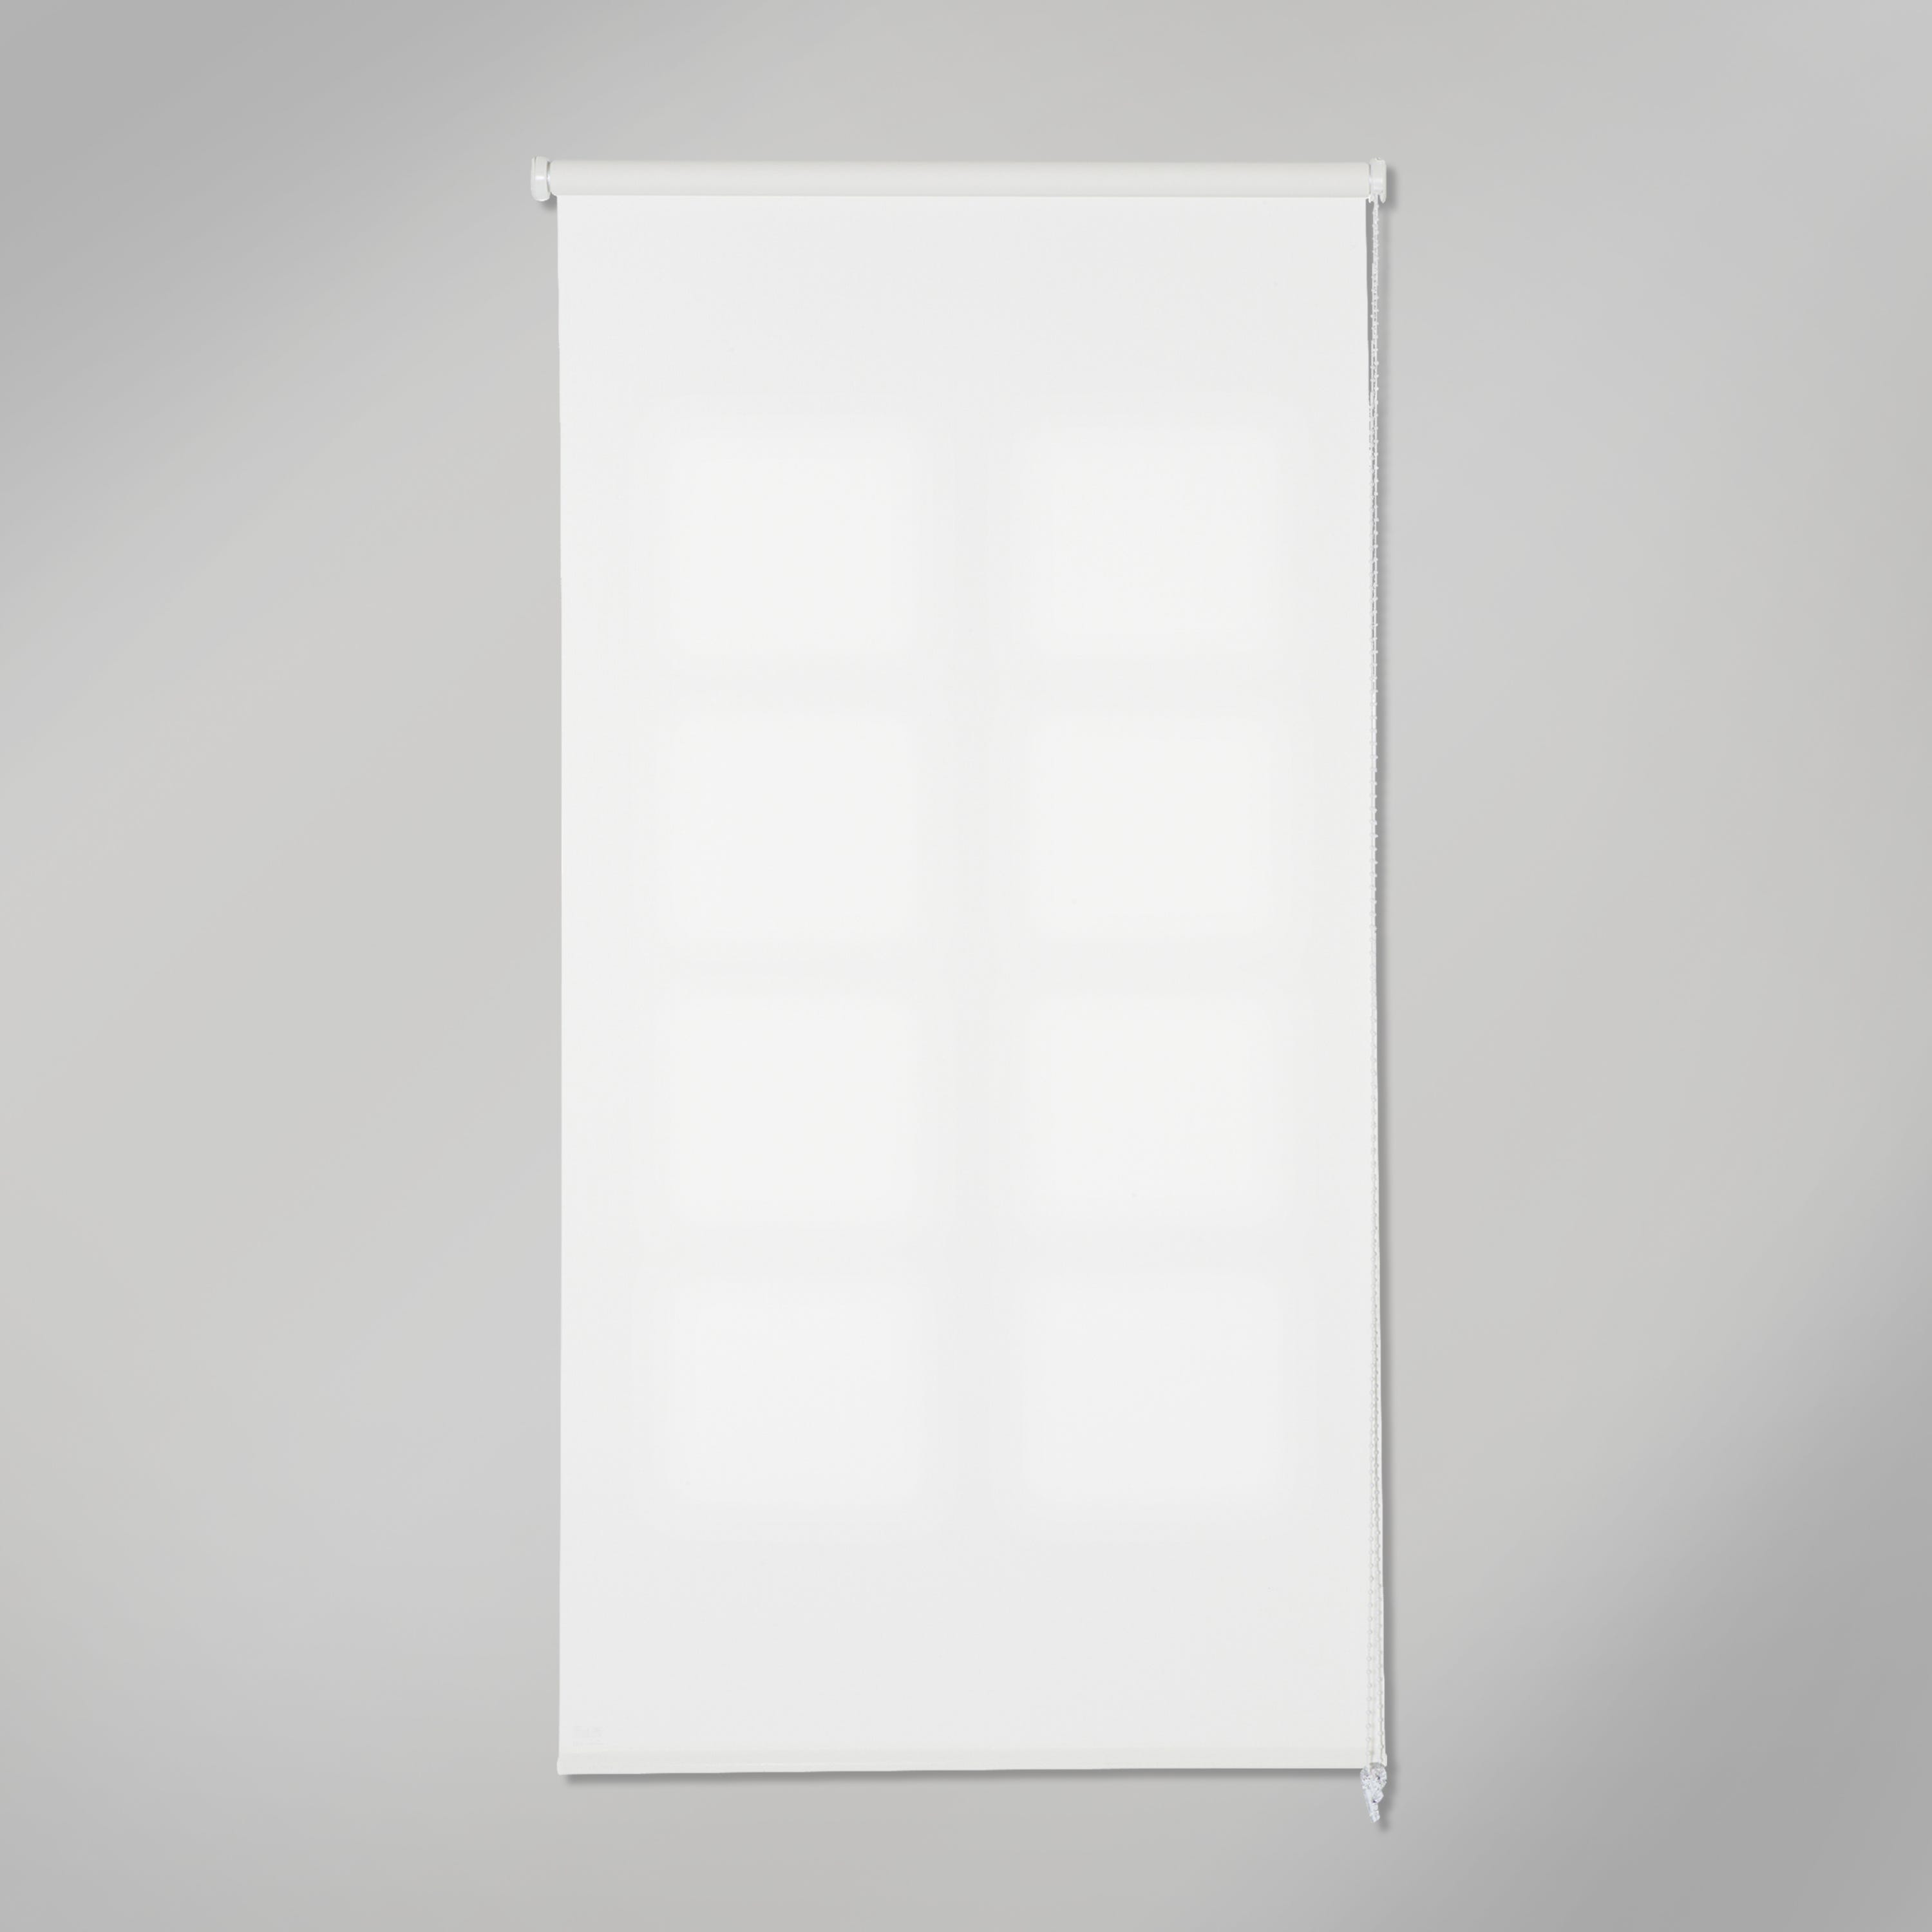 Estor enrollable translúcido Samba blanco INSPIRE de 120x250cm